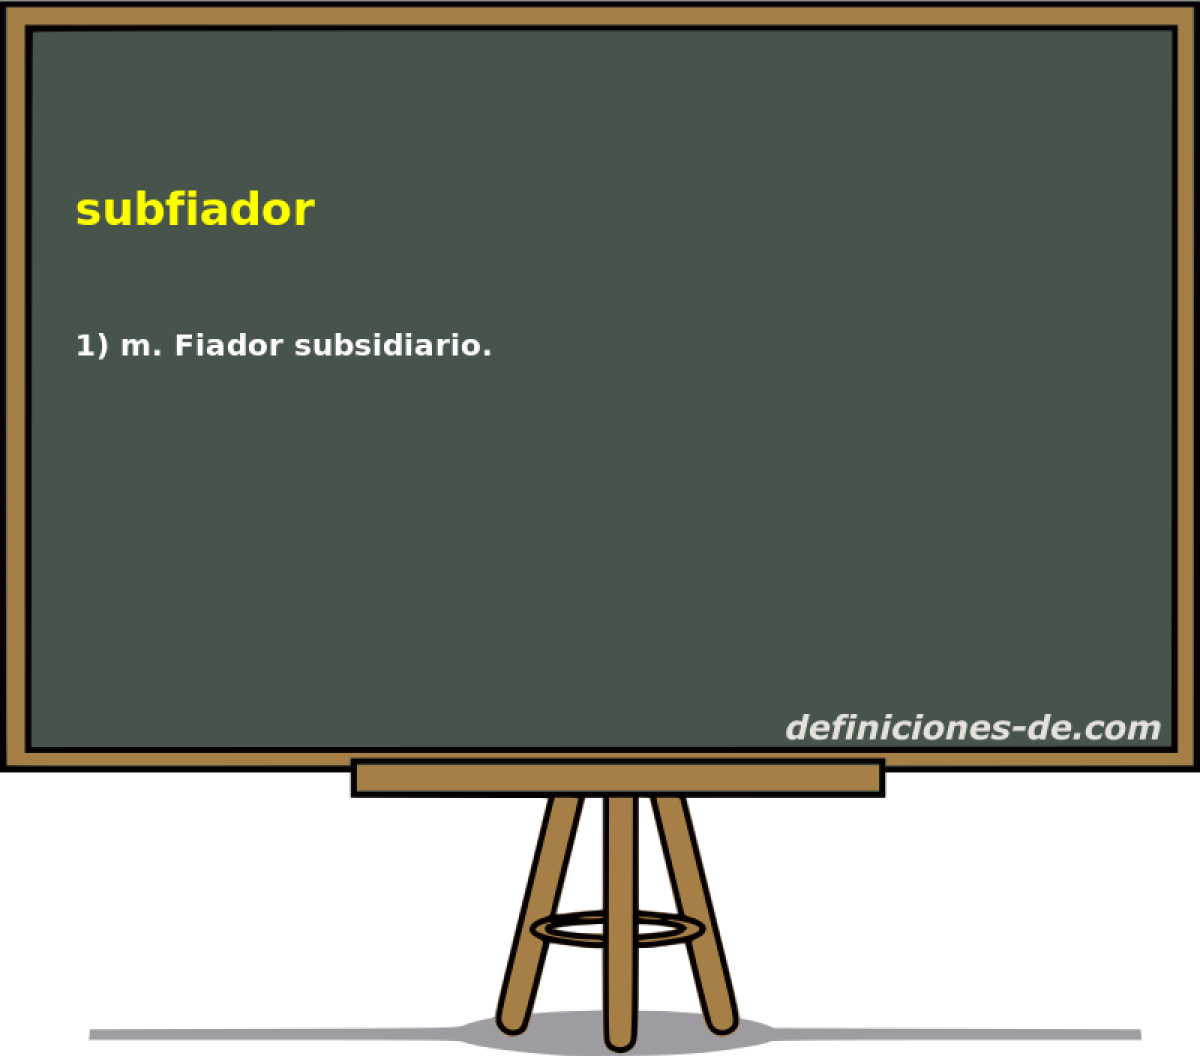 subfiador 